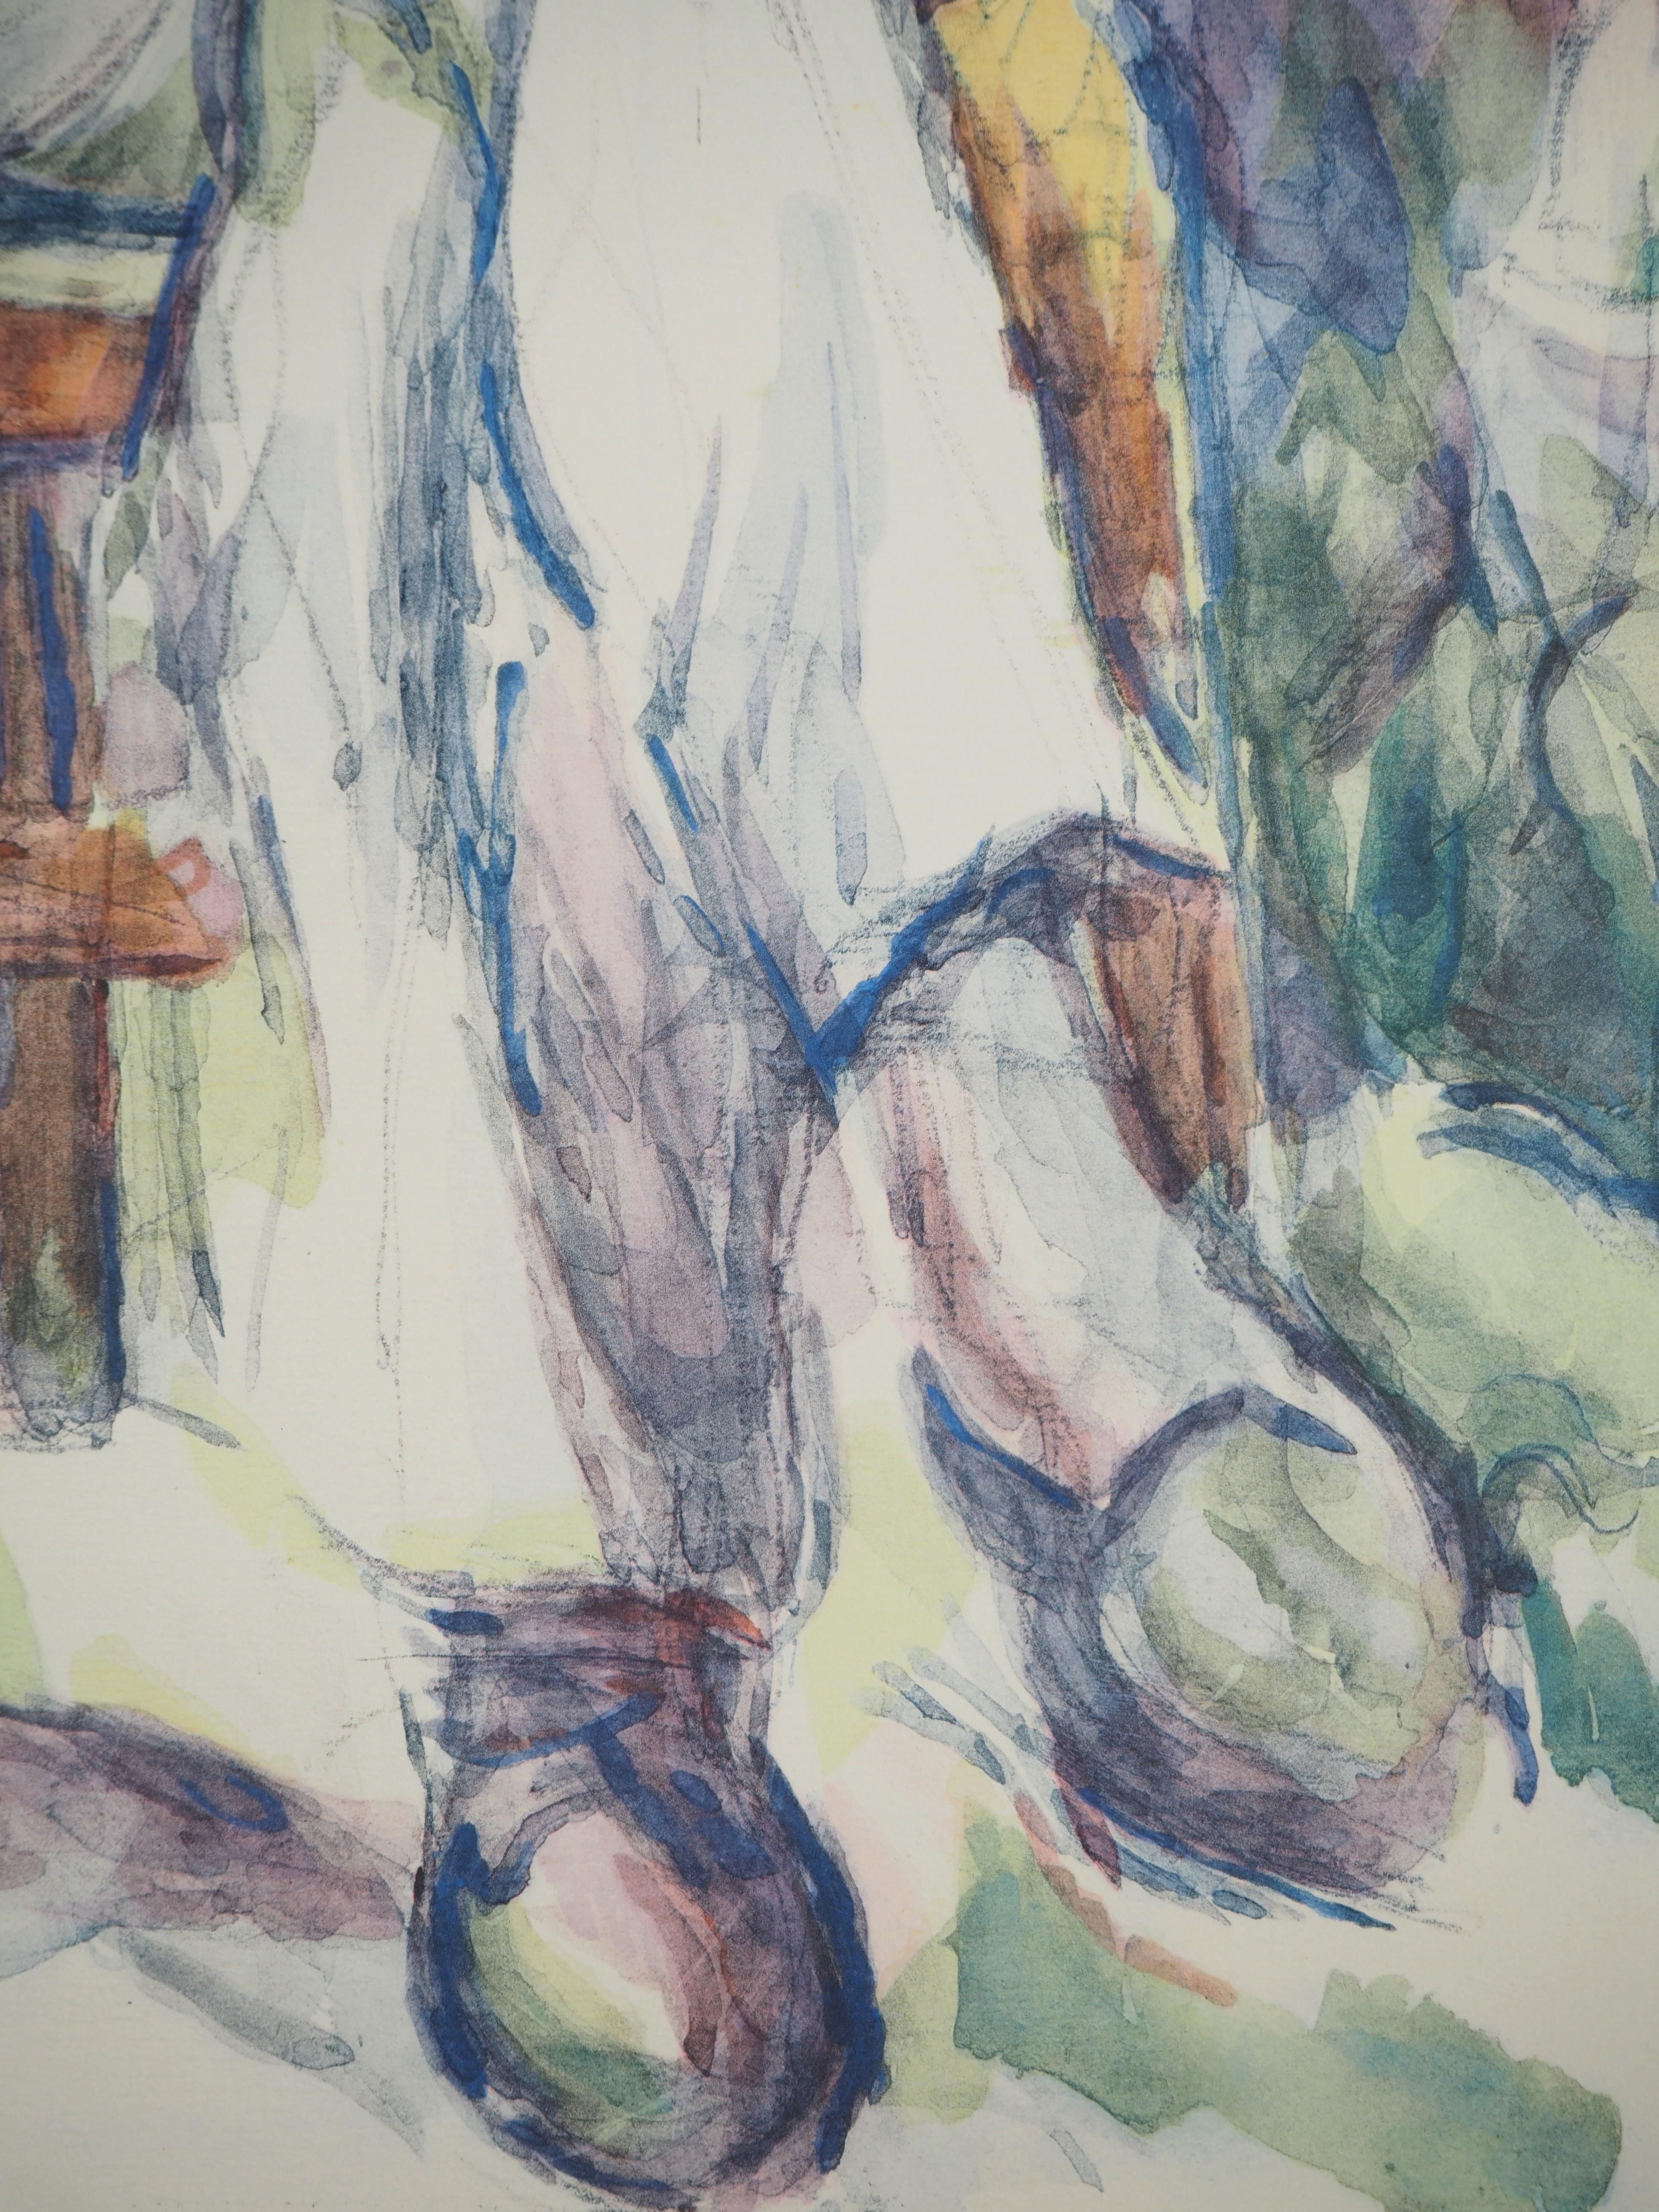 Paul Cezanne
Portrait, L'homme au chapeau, 1971

Lithographie et pochoir (atelier Jacomet)
Non signé
Numéroté / 225
Sur papier appliqué sur vélin d'Arches 53.5 x 41.5 cm (c. 21 x 16.5 in)

INFORMATION : Cette lithographie fait partie du portfolio